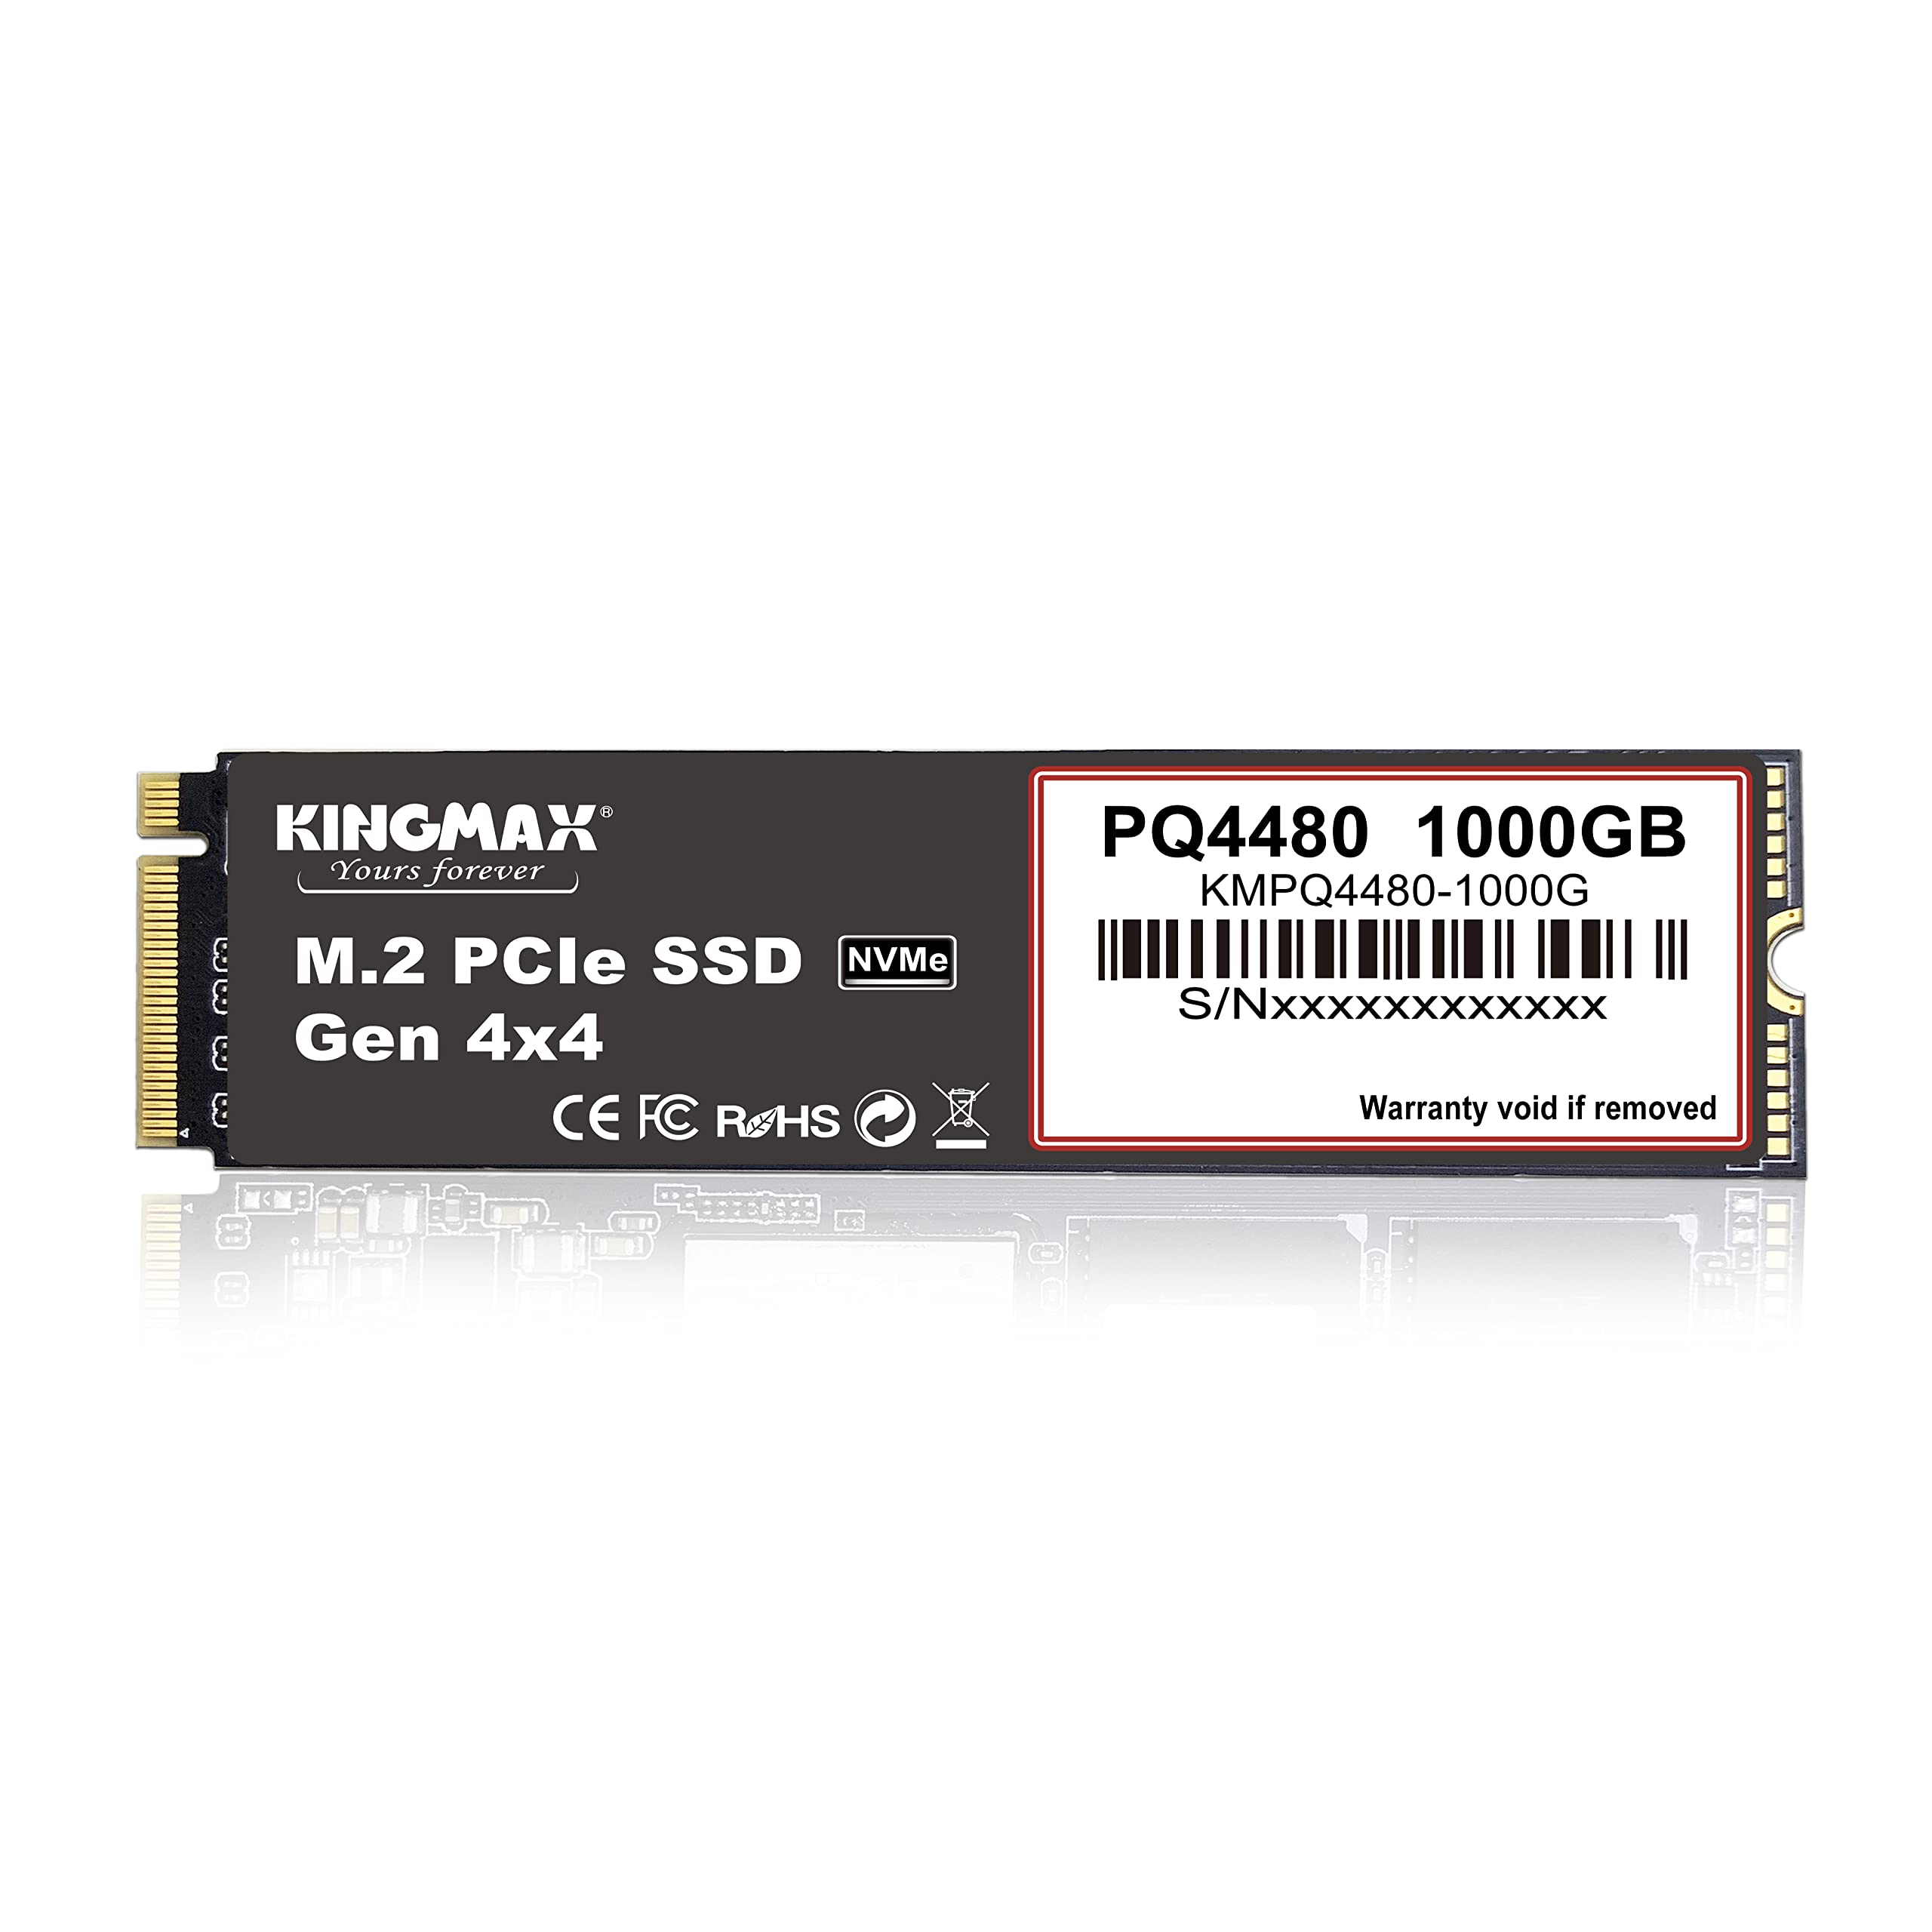 Kingmax PQ4480 M.2 2280 PCIe NVMe SSD Gen4x4